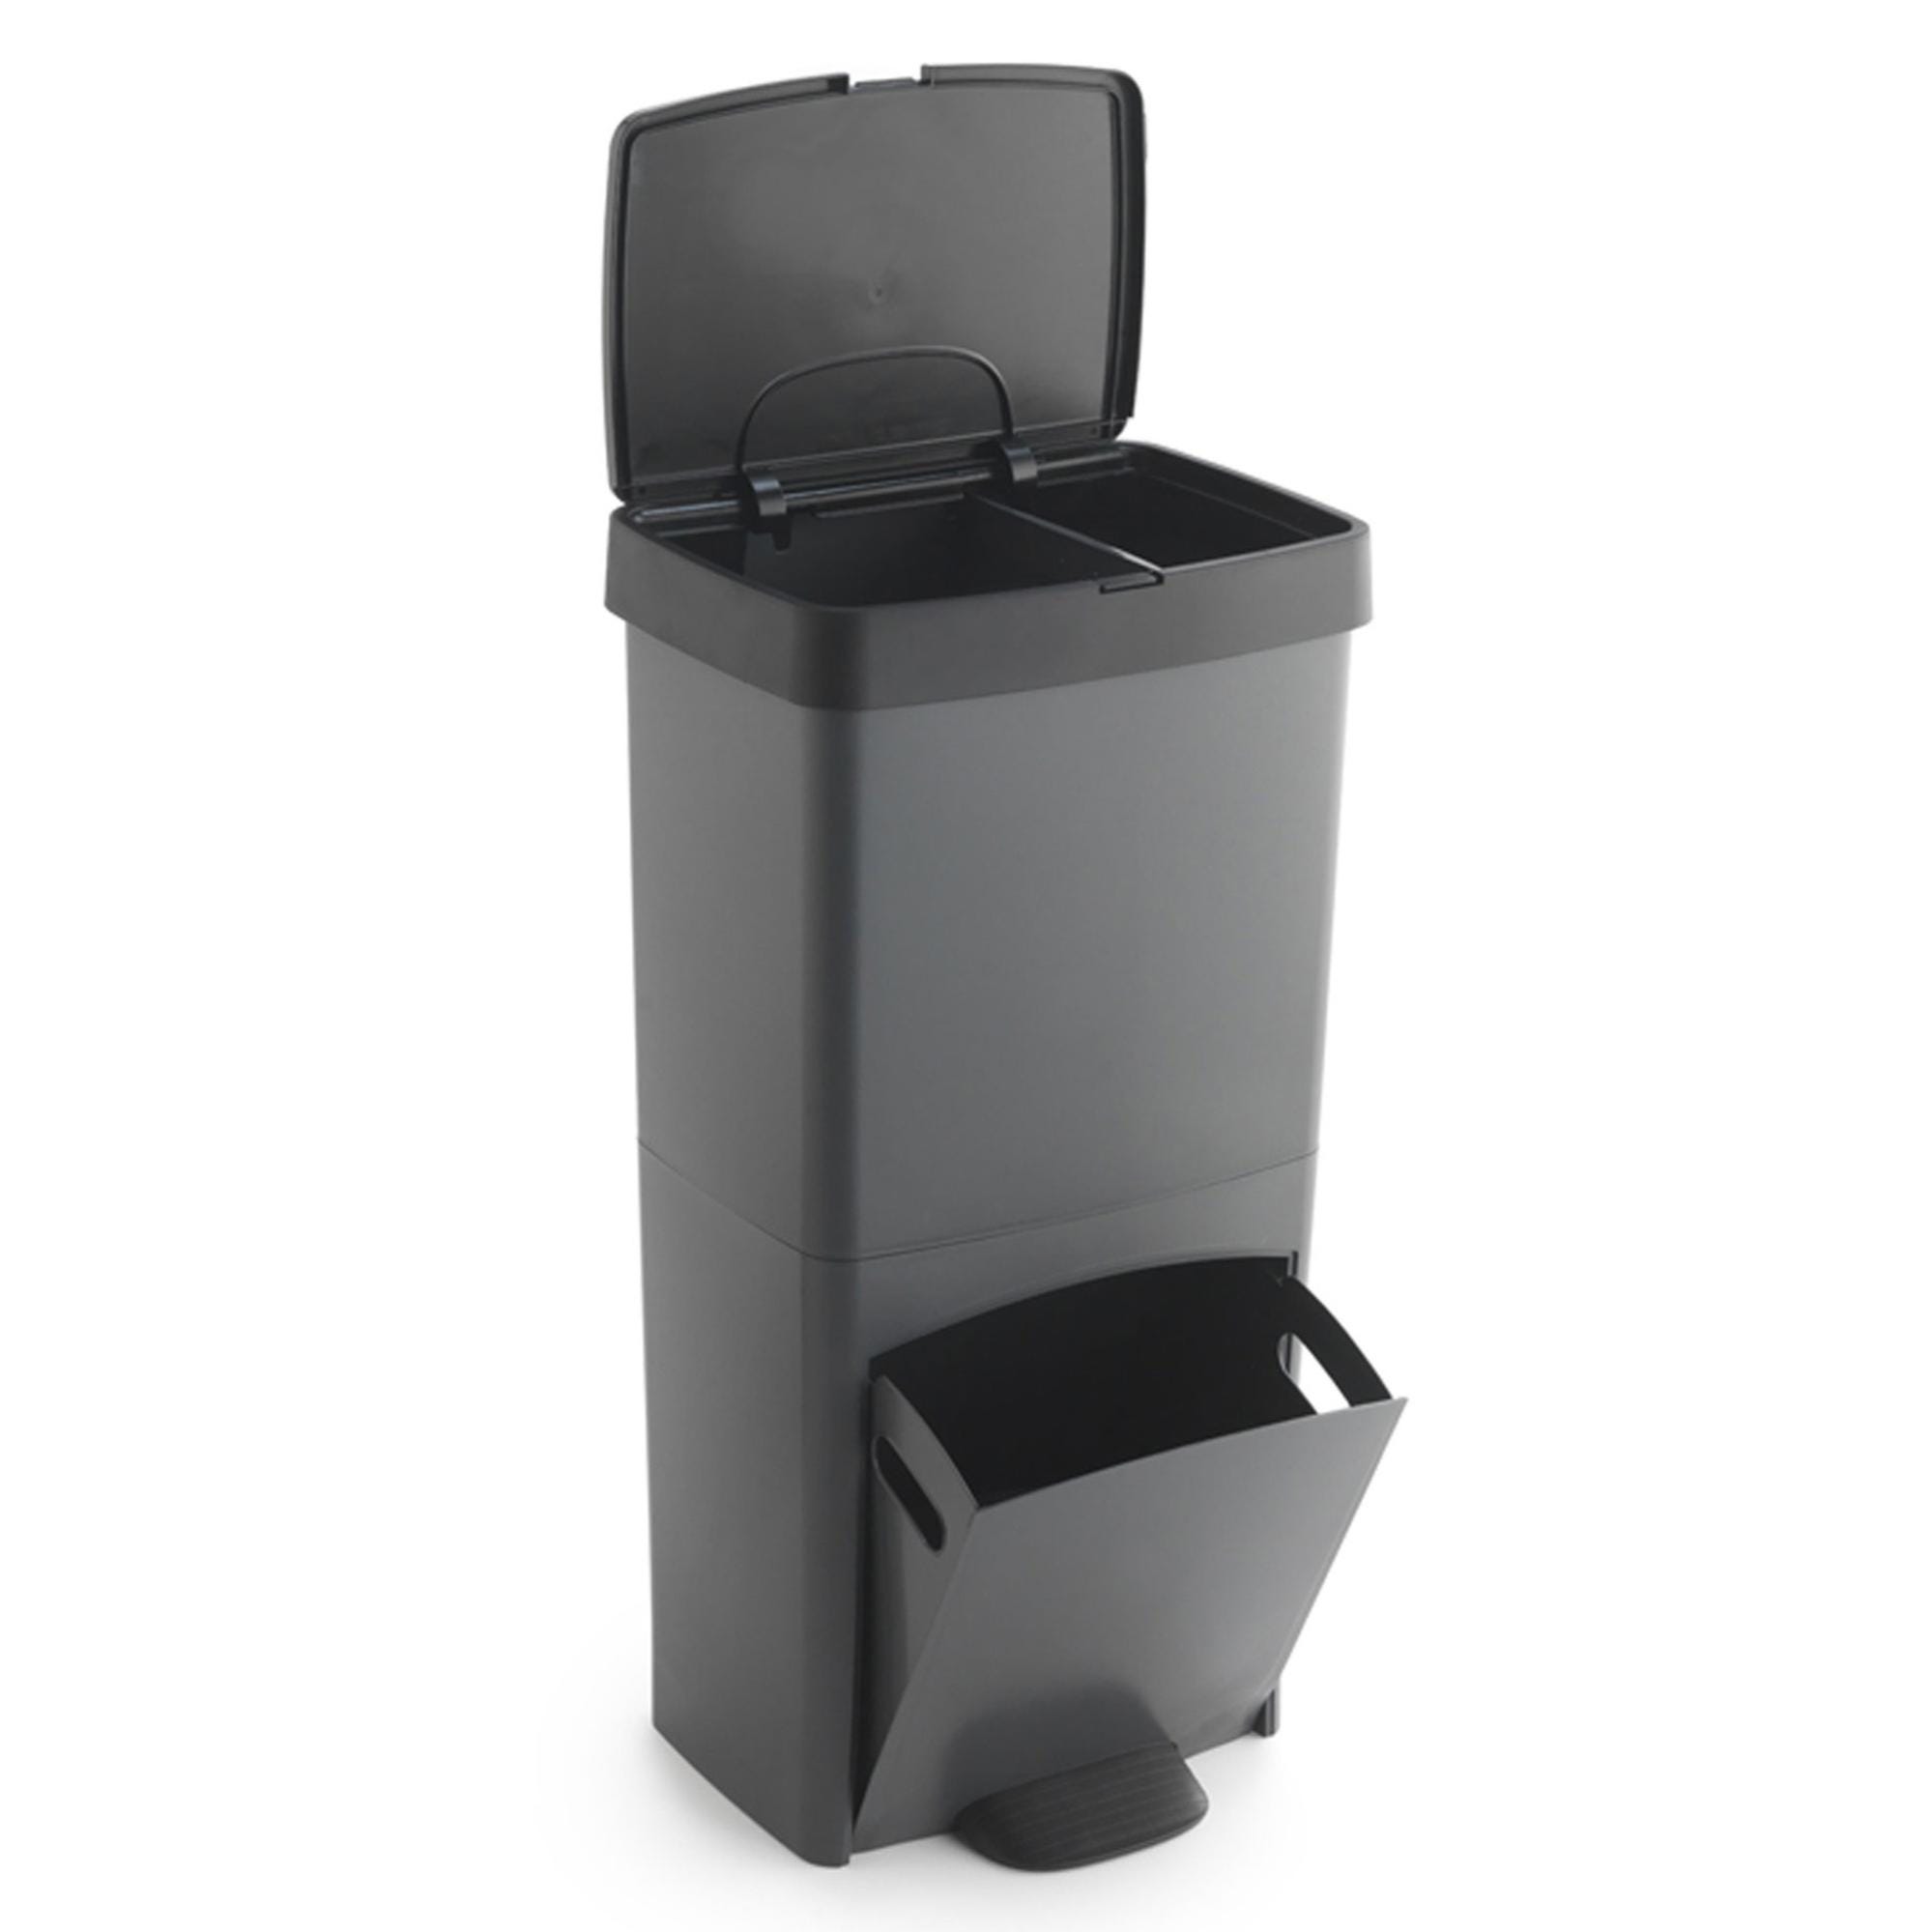 Poubelle ou conteneur de recyclage 70L, VERTICAL, 2 compartiments